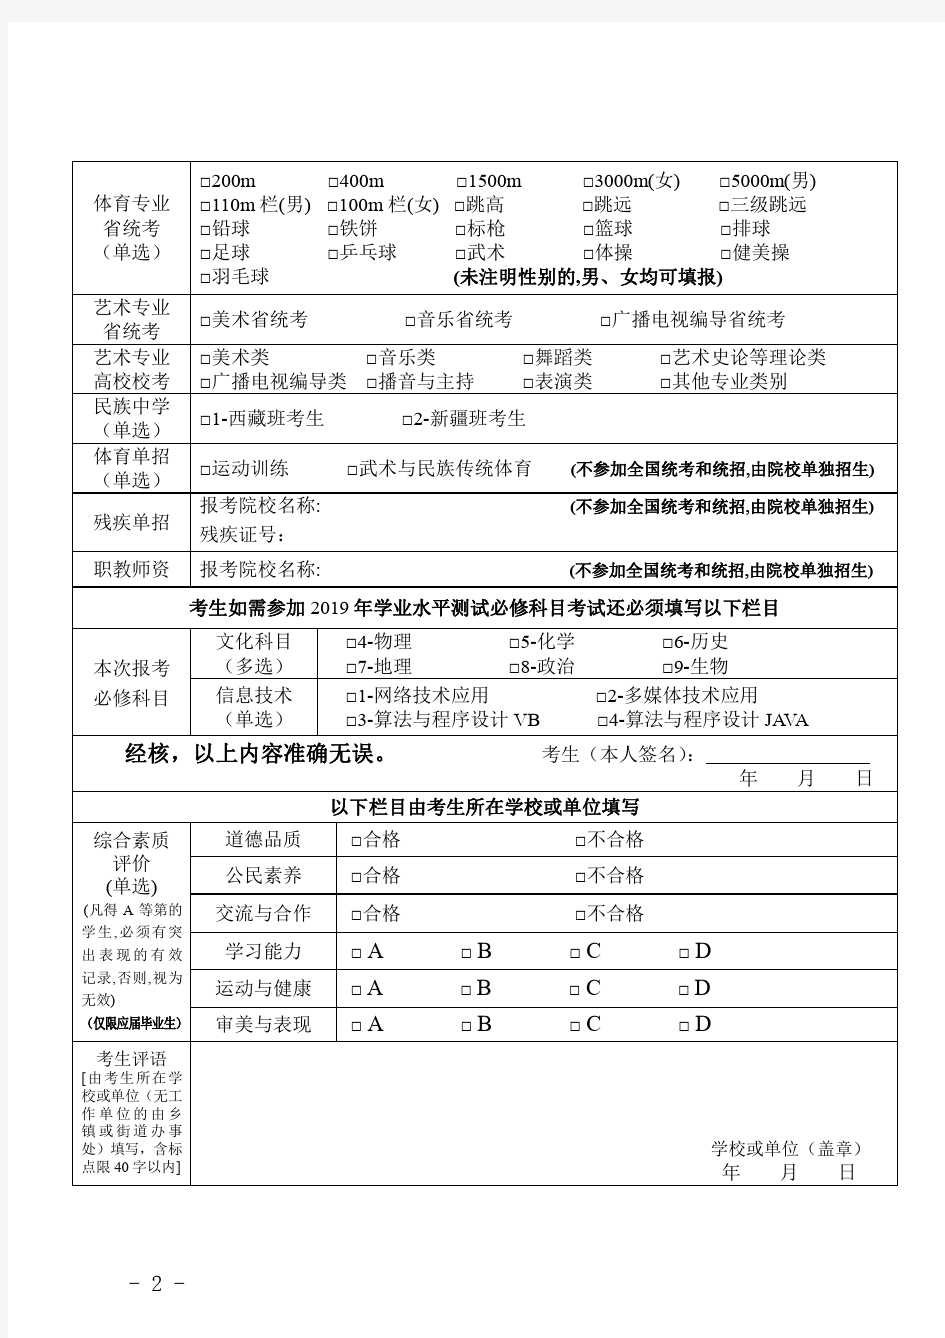 江苏2019年普通高校招生考生报名信息采集表